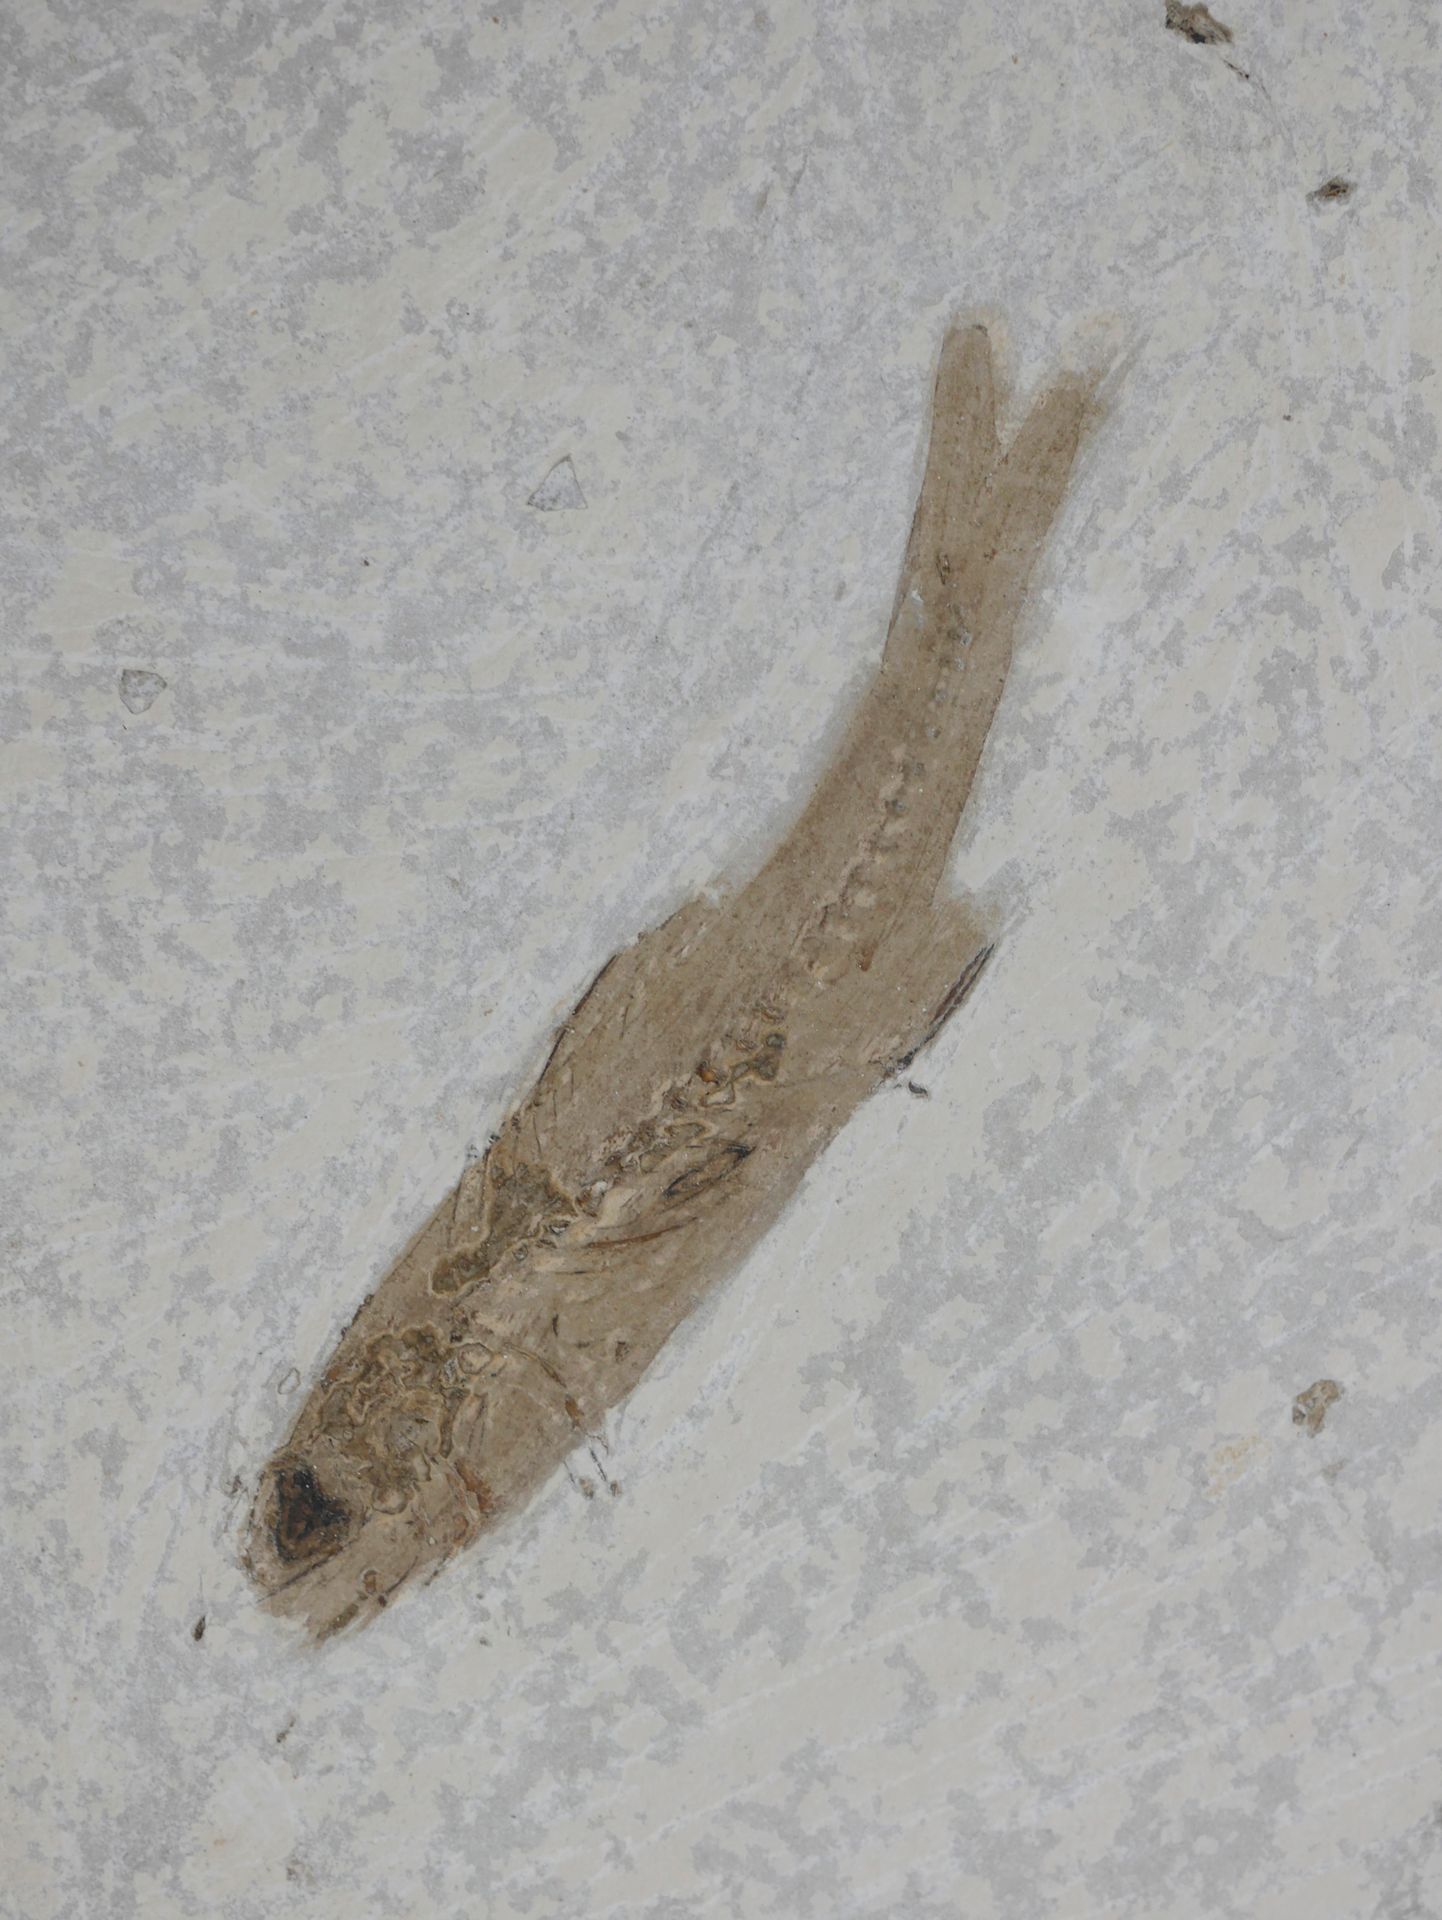 Null Oligocene dapalis macrurus fossil fish. 

About 35 million years old.

Widt&hellip;